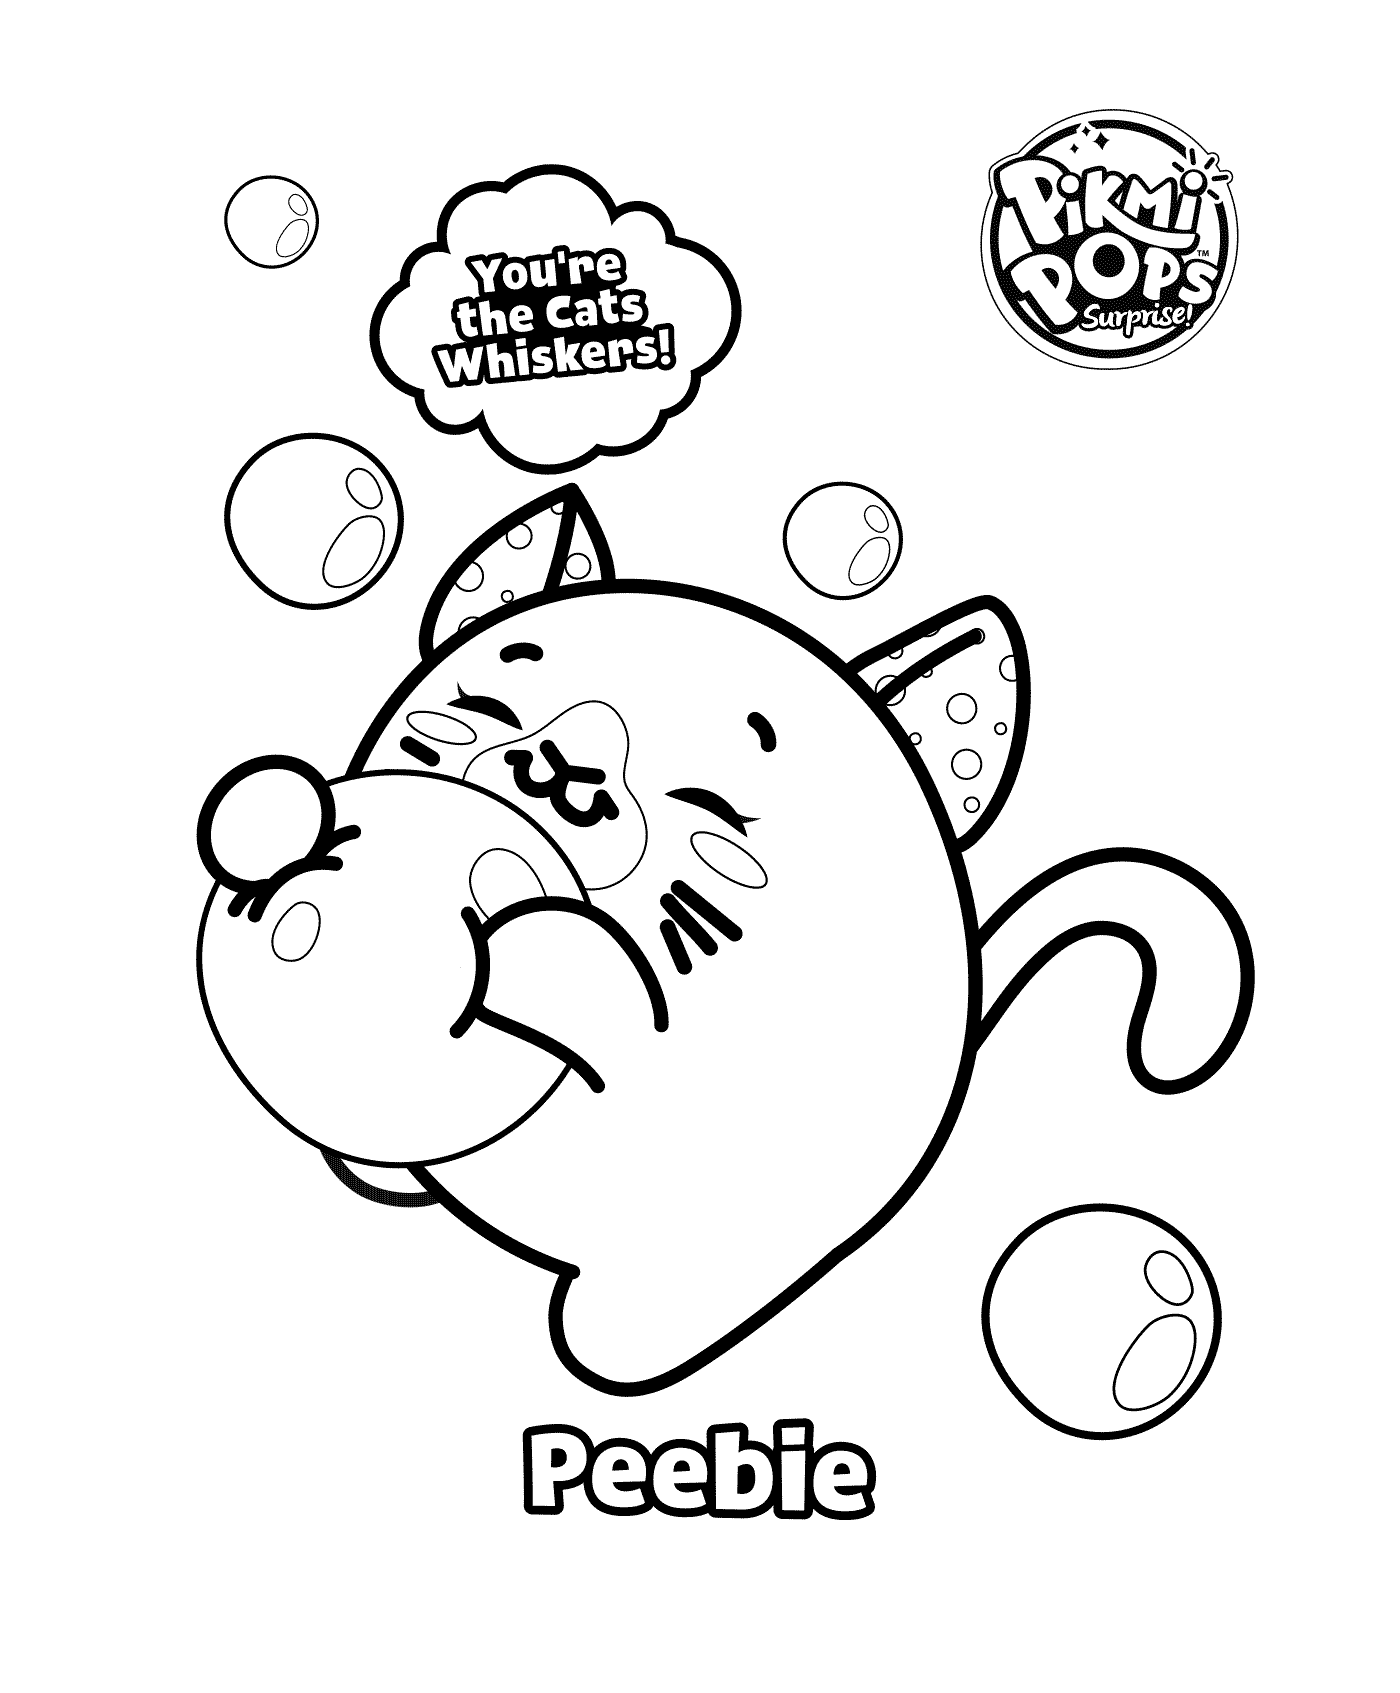  Pikmi Pop coloring, a cute cat 